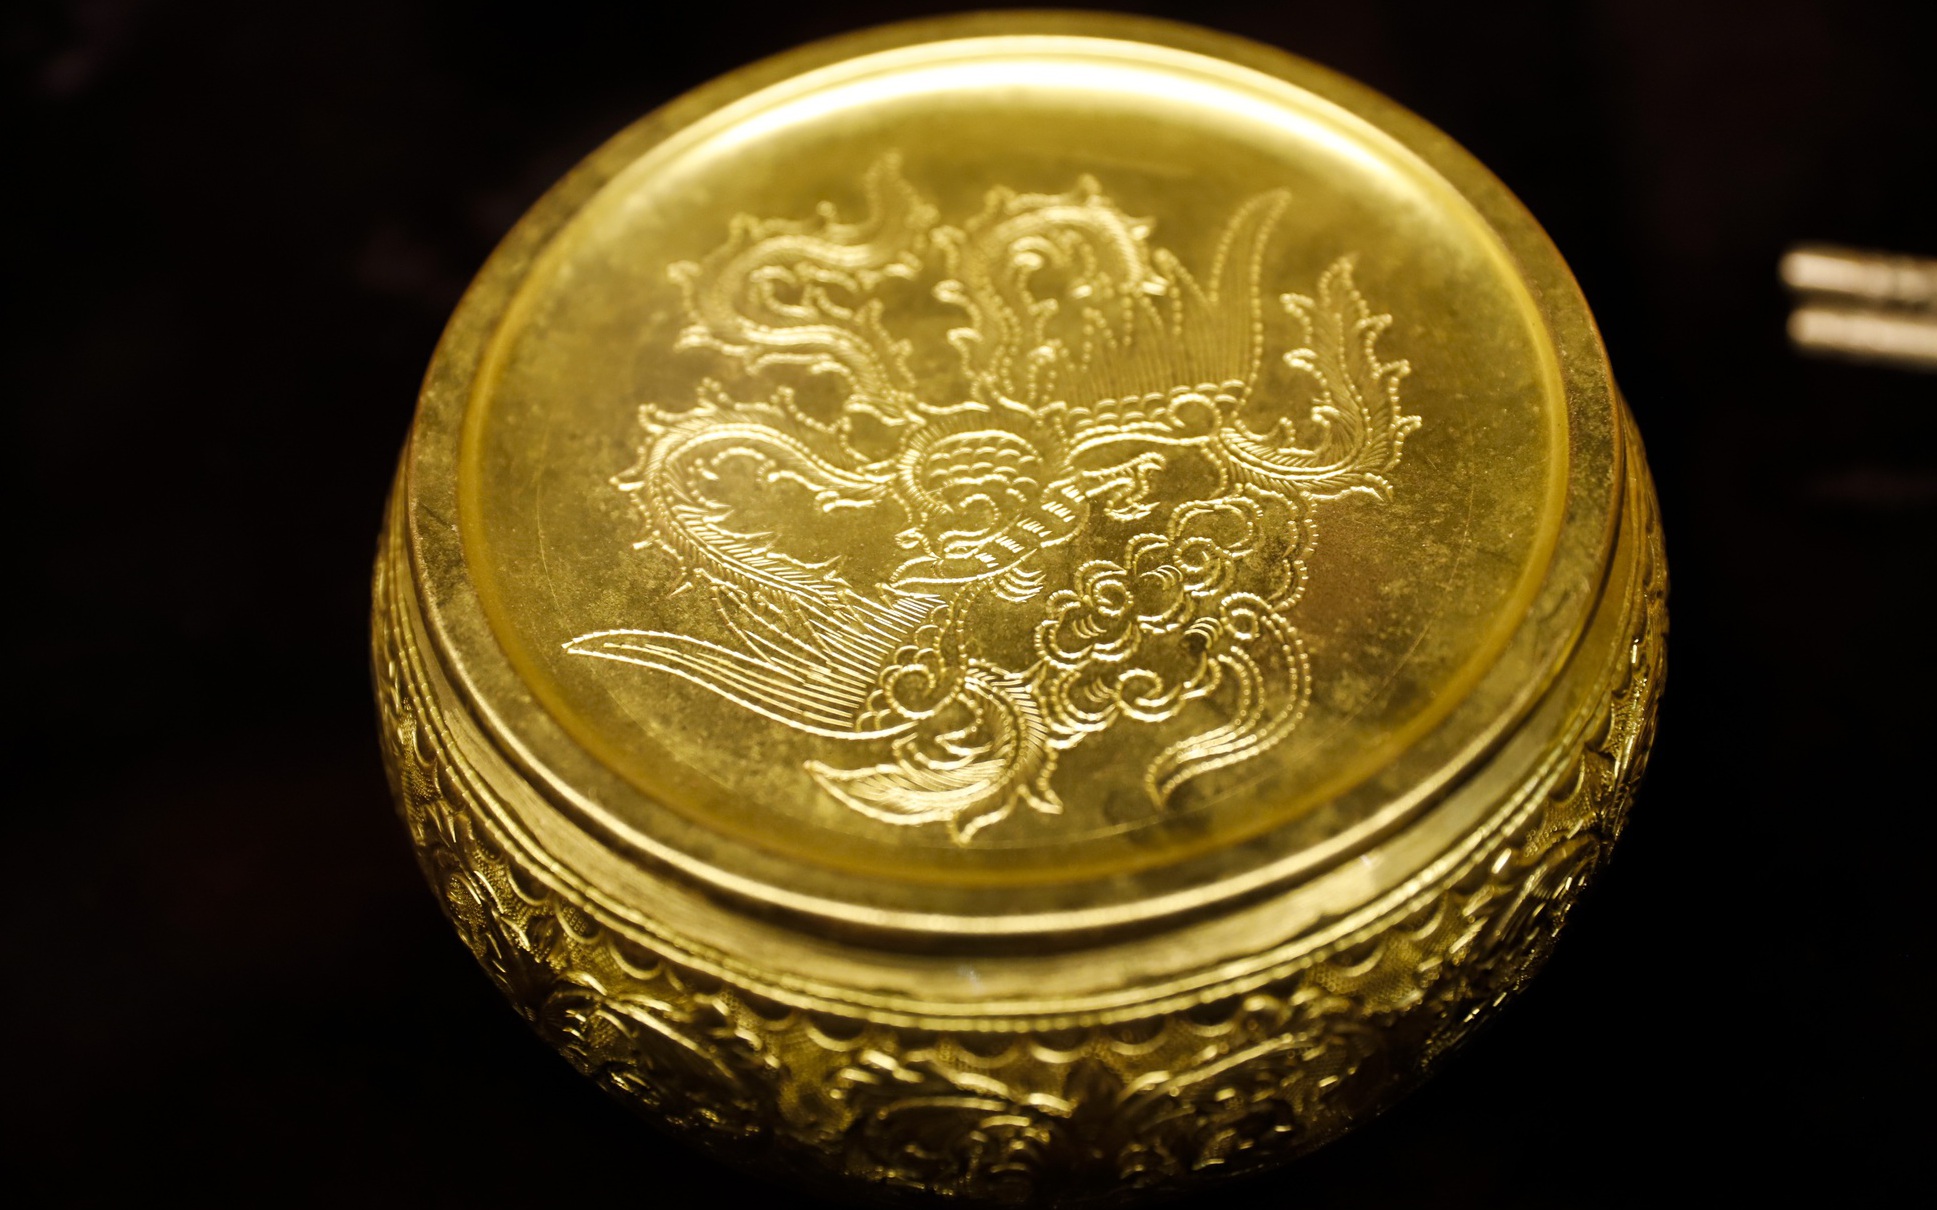 Những sản phẩm in đậm dấu ấn trăm năm nghề đúc vàng, bạc tại ngôi đình cổ giữa lòng phố cố Hà Nội